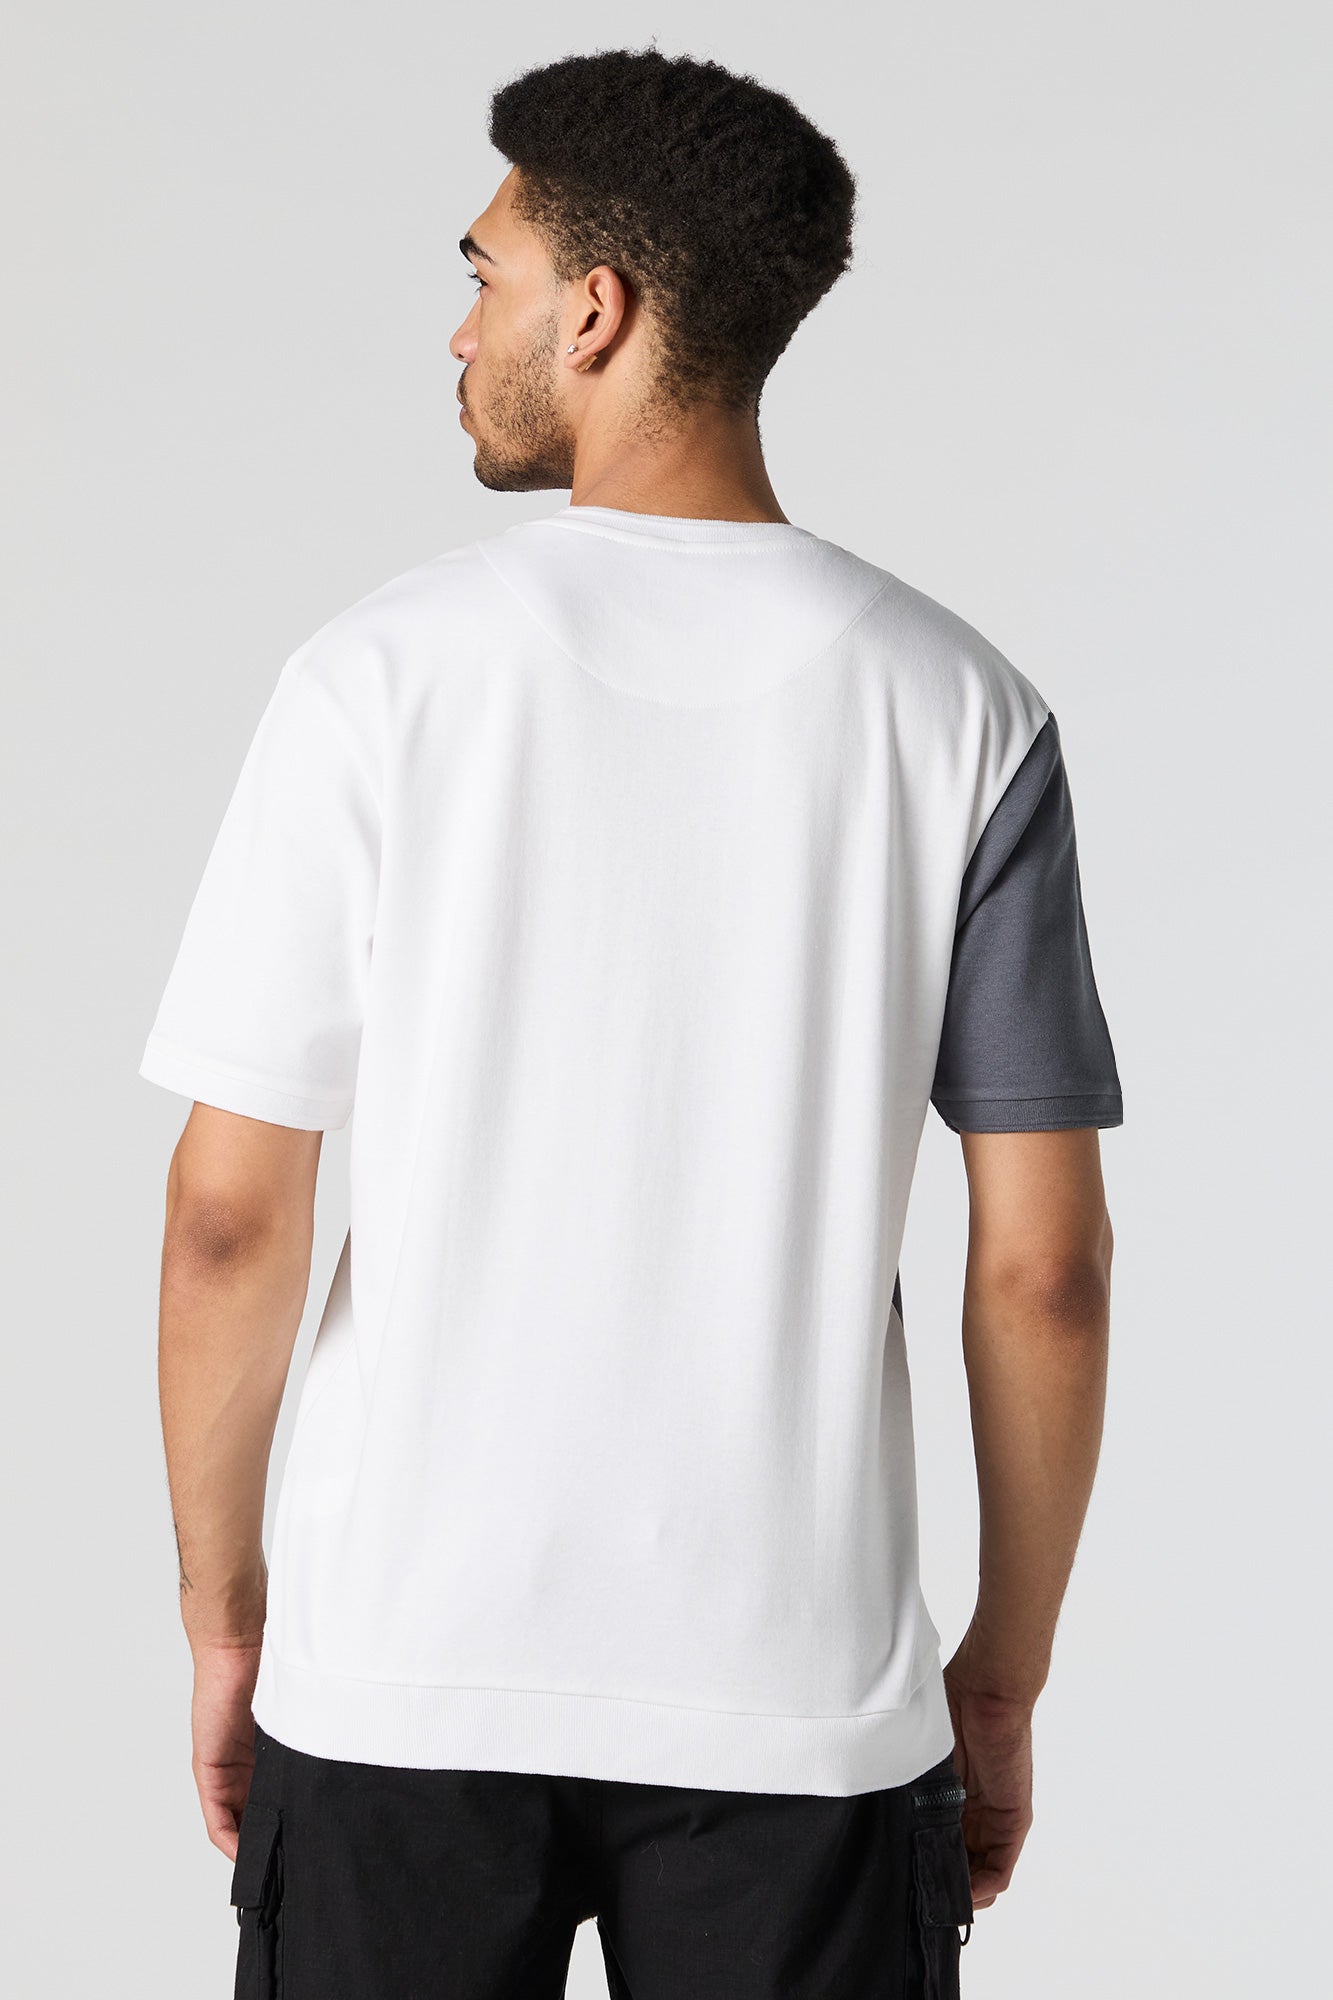 Vertical Striped Colourblock T-Shirt